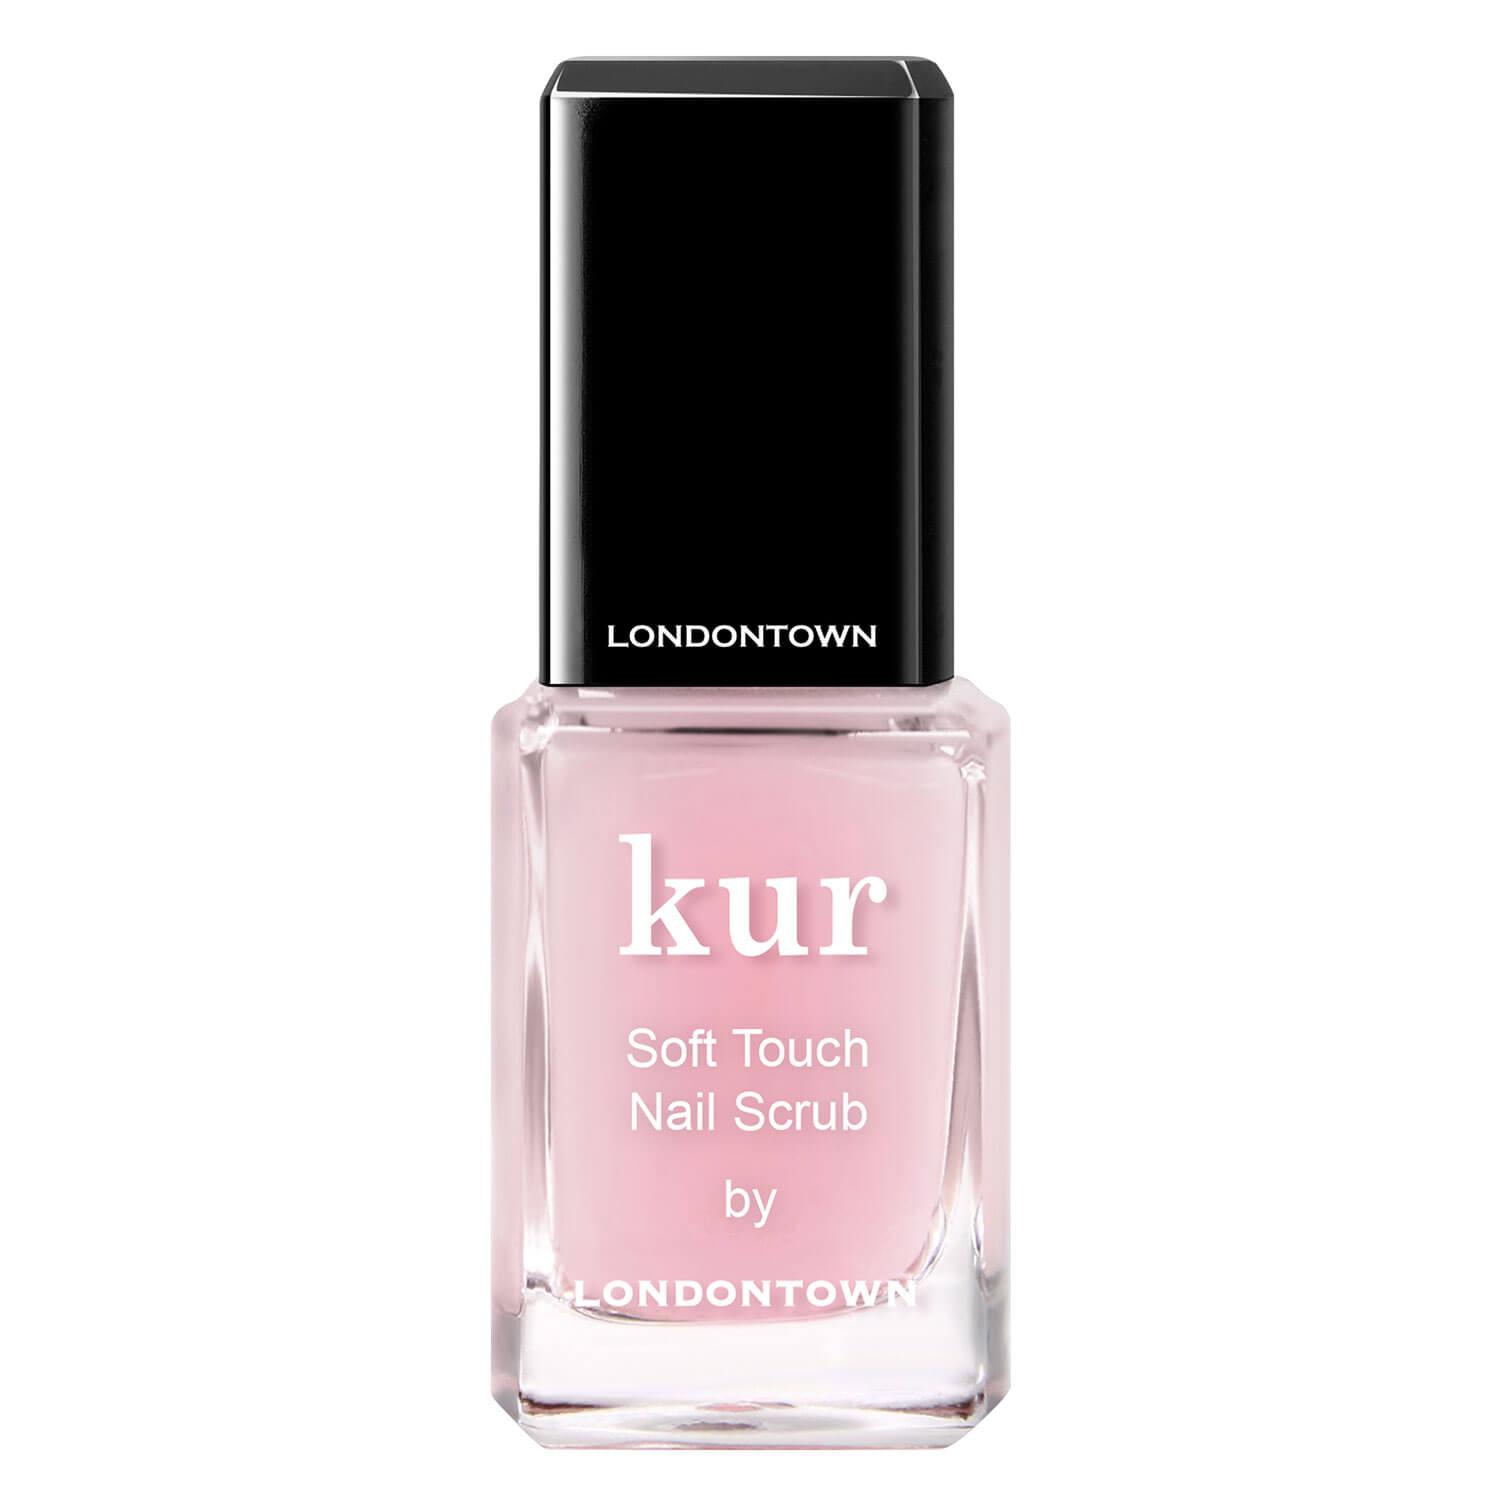 kur - Soft Touch Nail Scrub